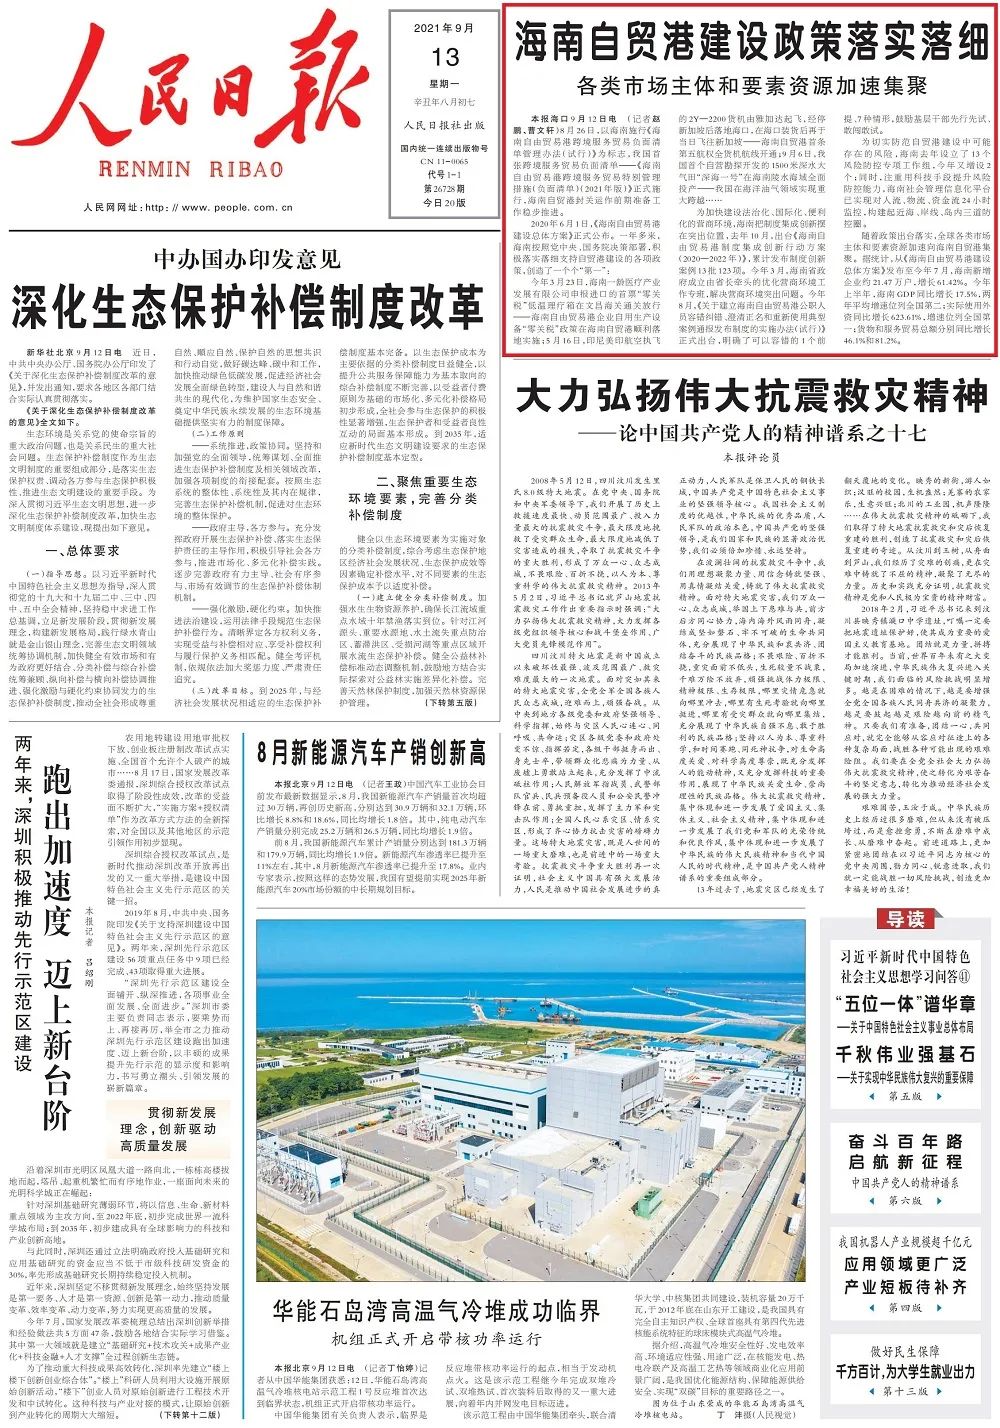 人民日报社头版:海南自贸港建设政策落实落细